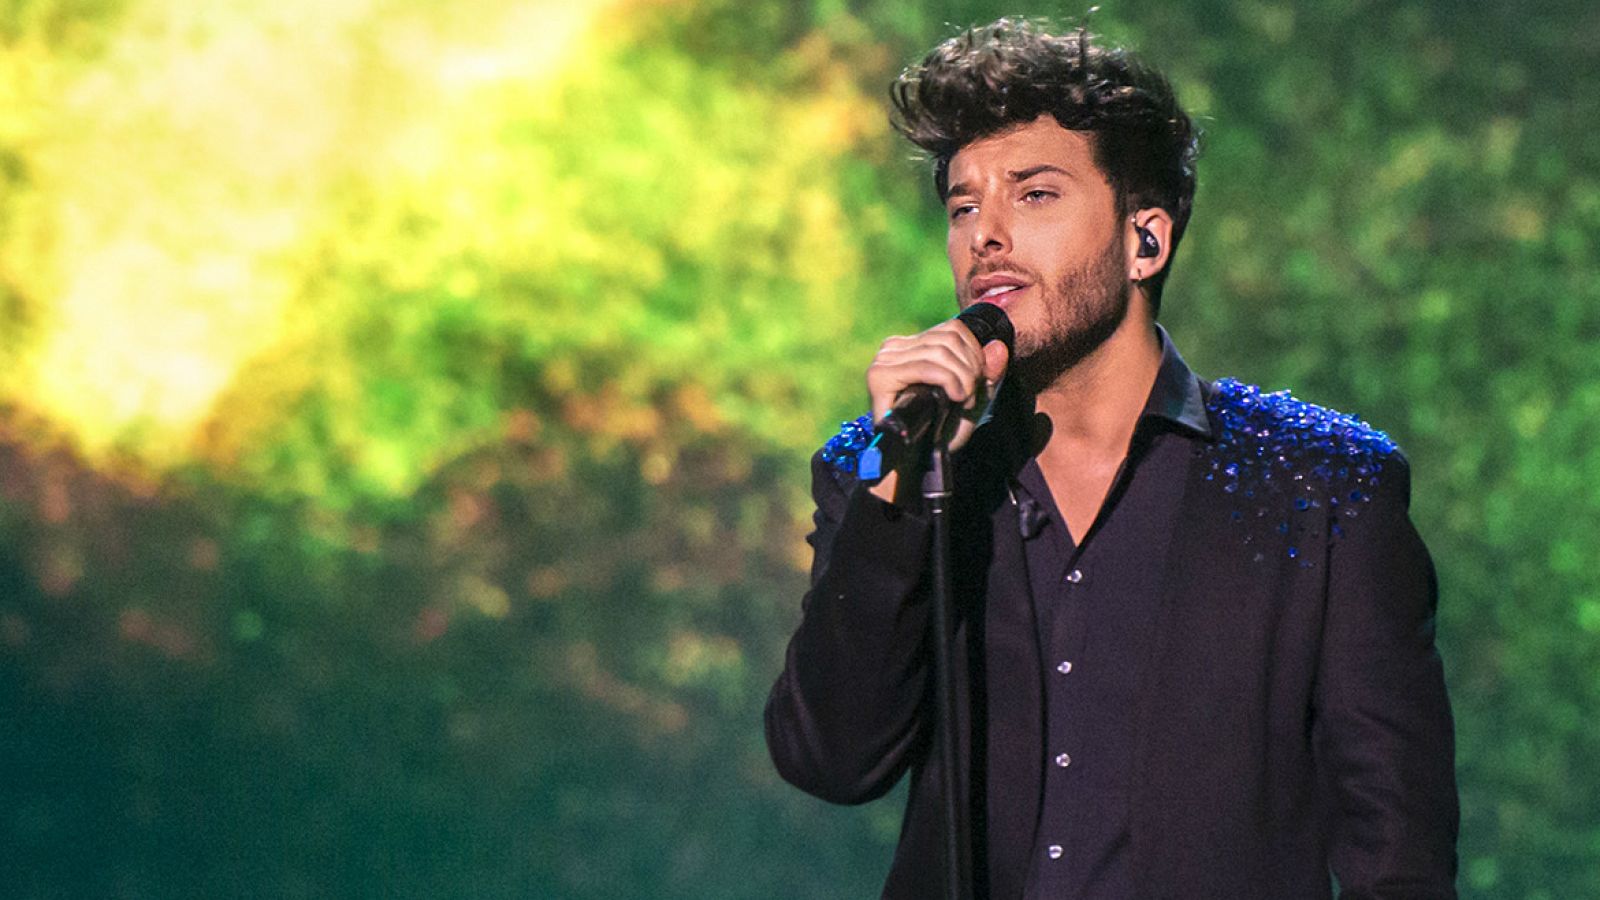 Blas Cantó interpreta "Amar pelos dois" en 'Destino Eurovisión'